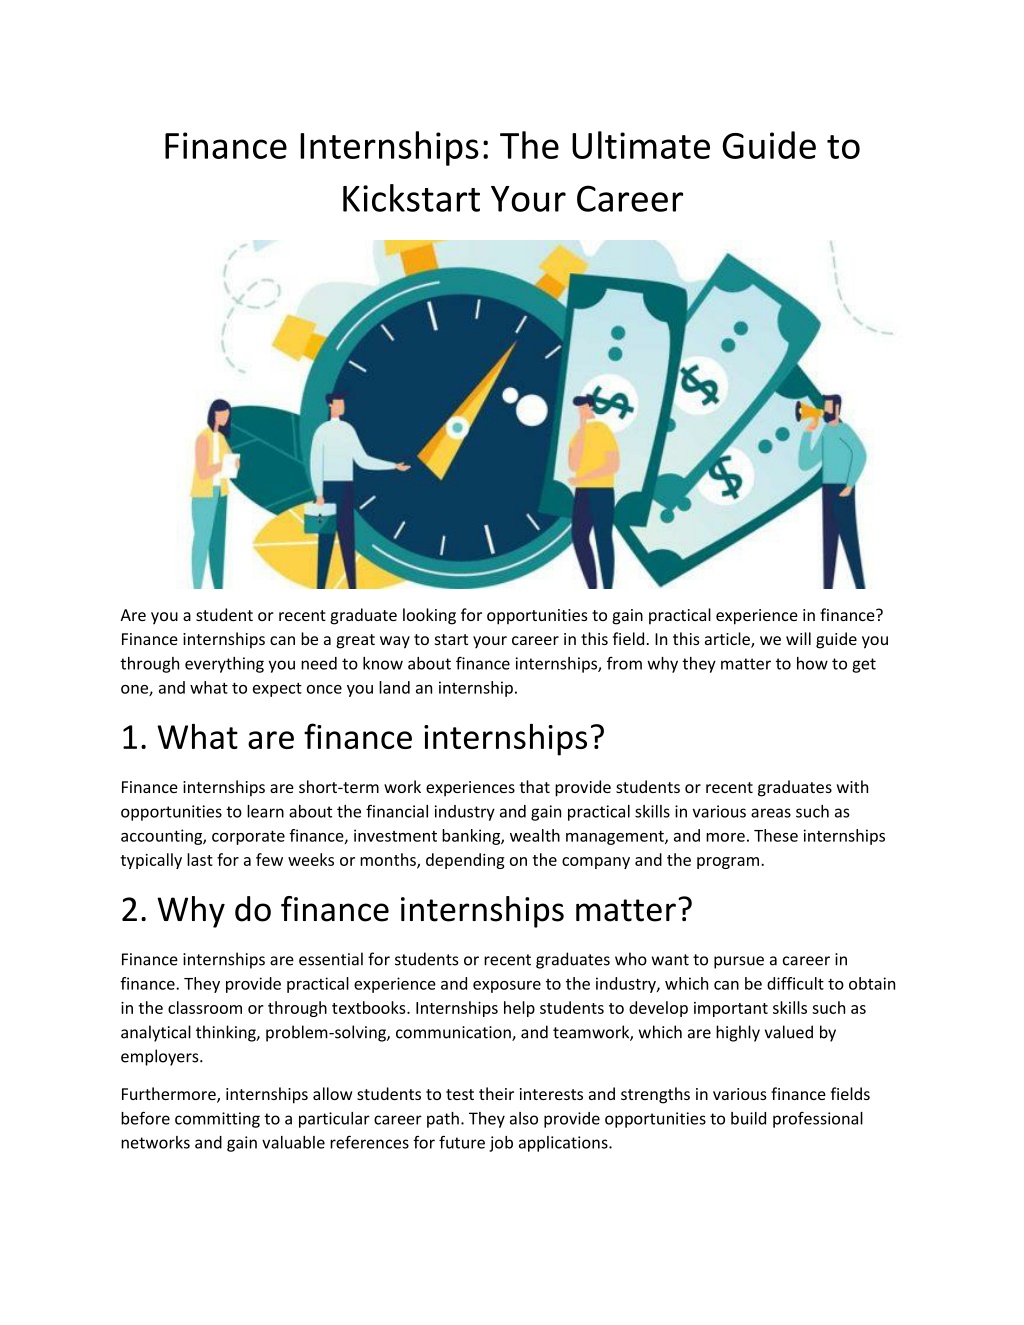 PPT Finance Internships PowerPoint Presentation, free download ID